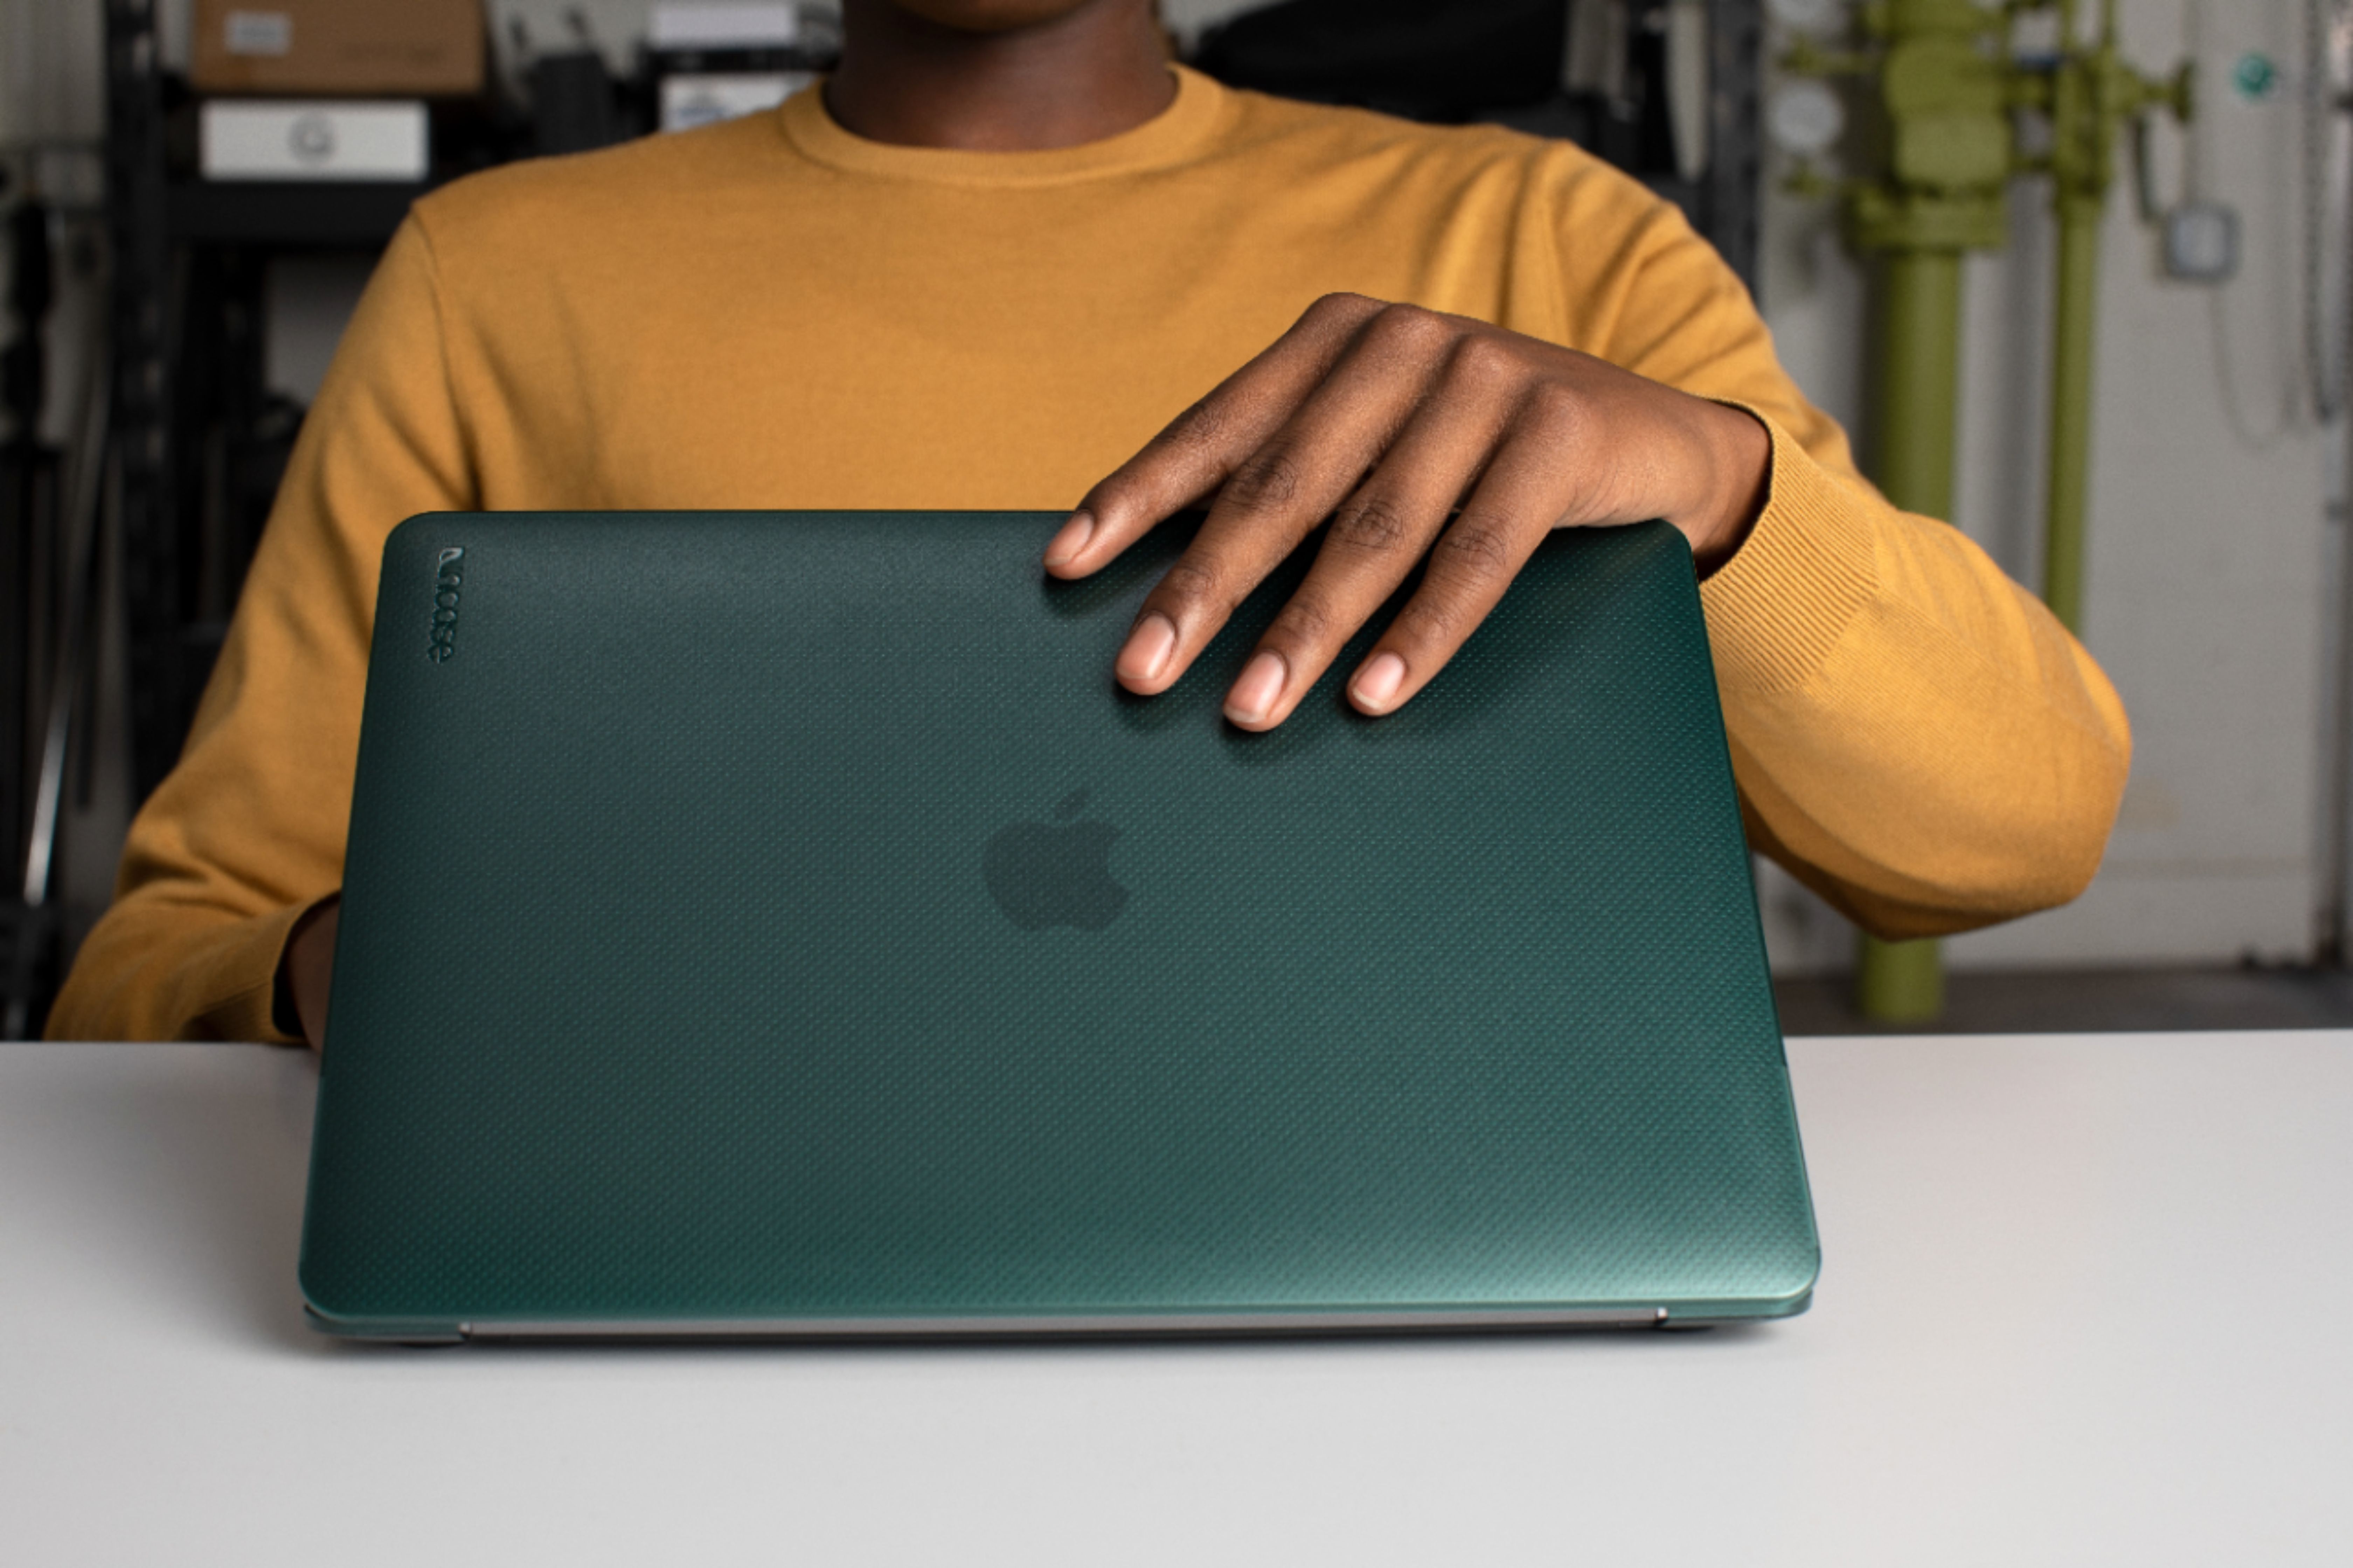 Content MacBook Case . Forest – hardgraft